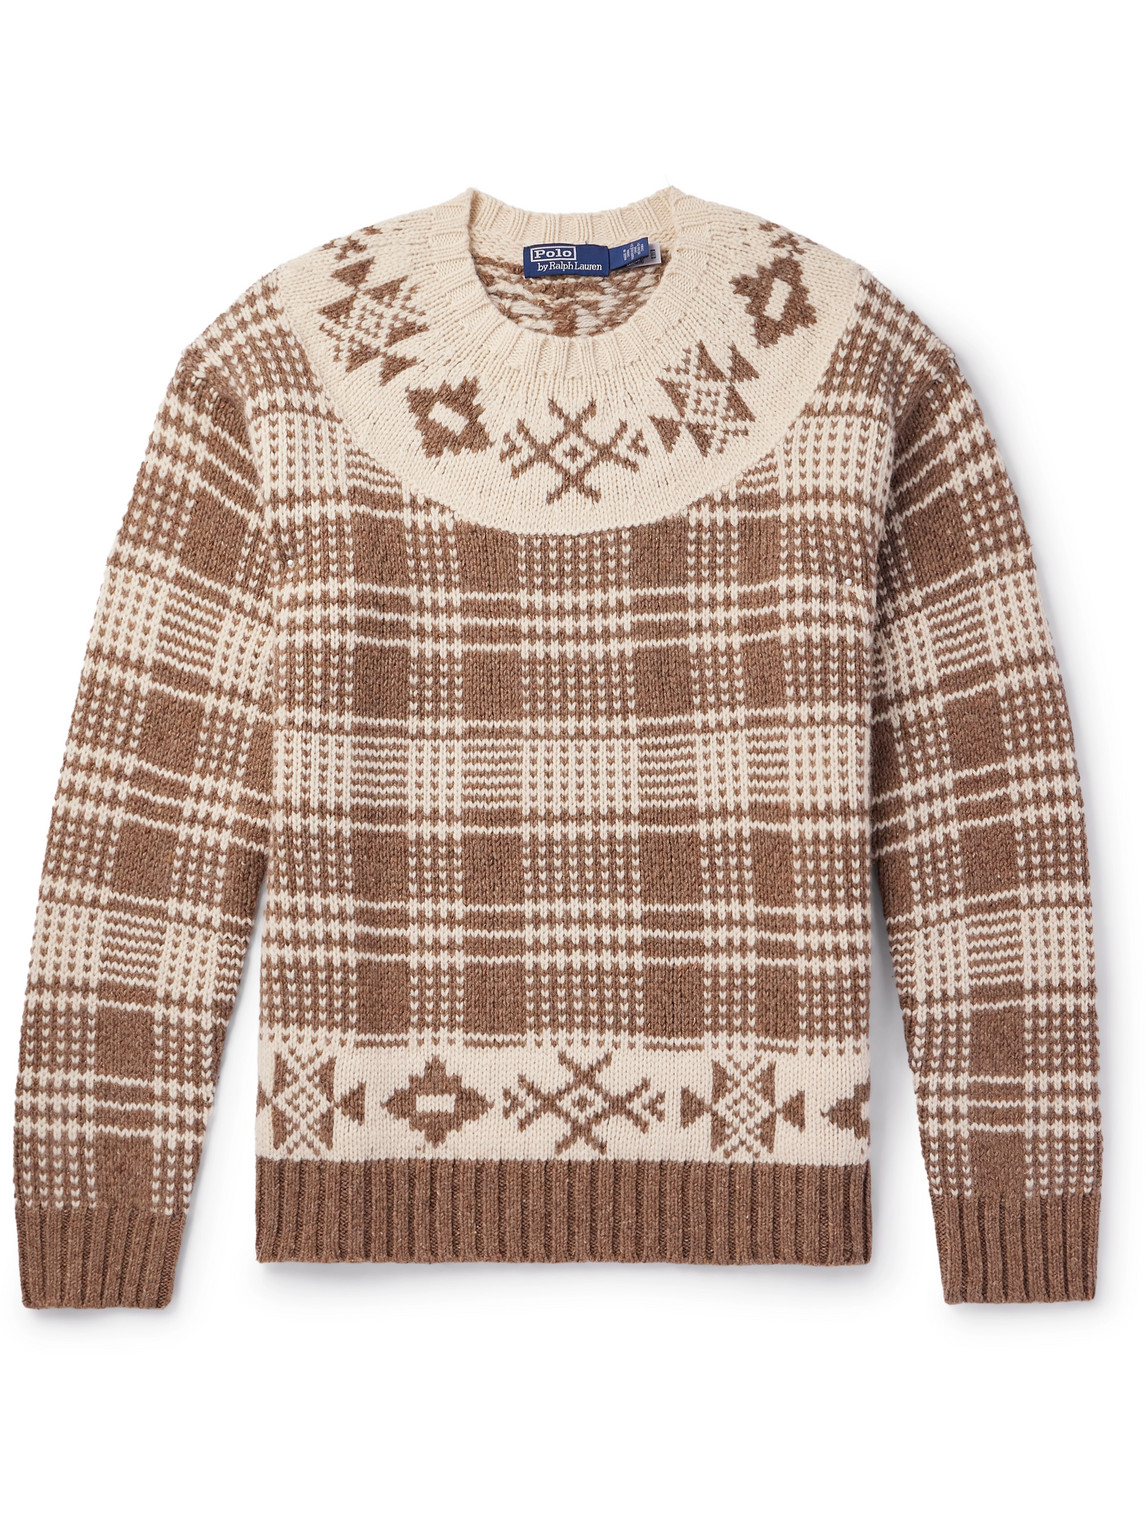 Polo Ralph Lauren - Checked Wool and Linen-Blend Sweater - Men - Neutrals - M von Polo Ralph Lauren